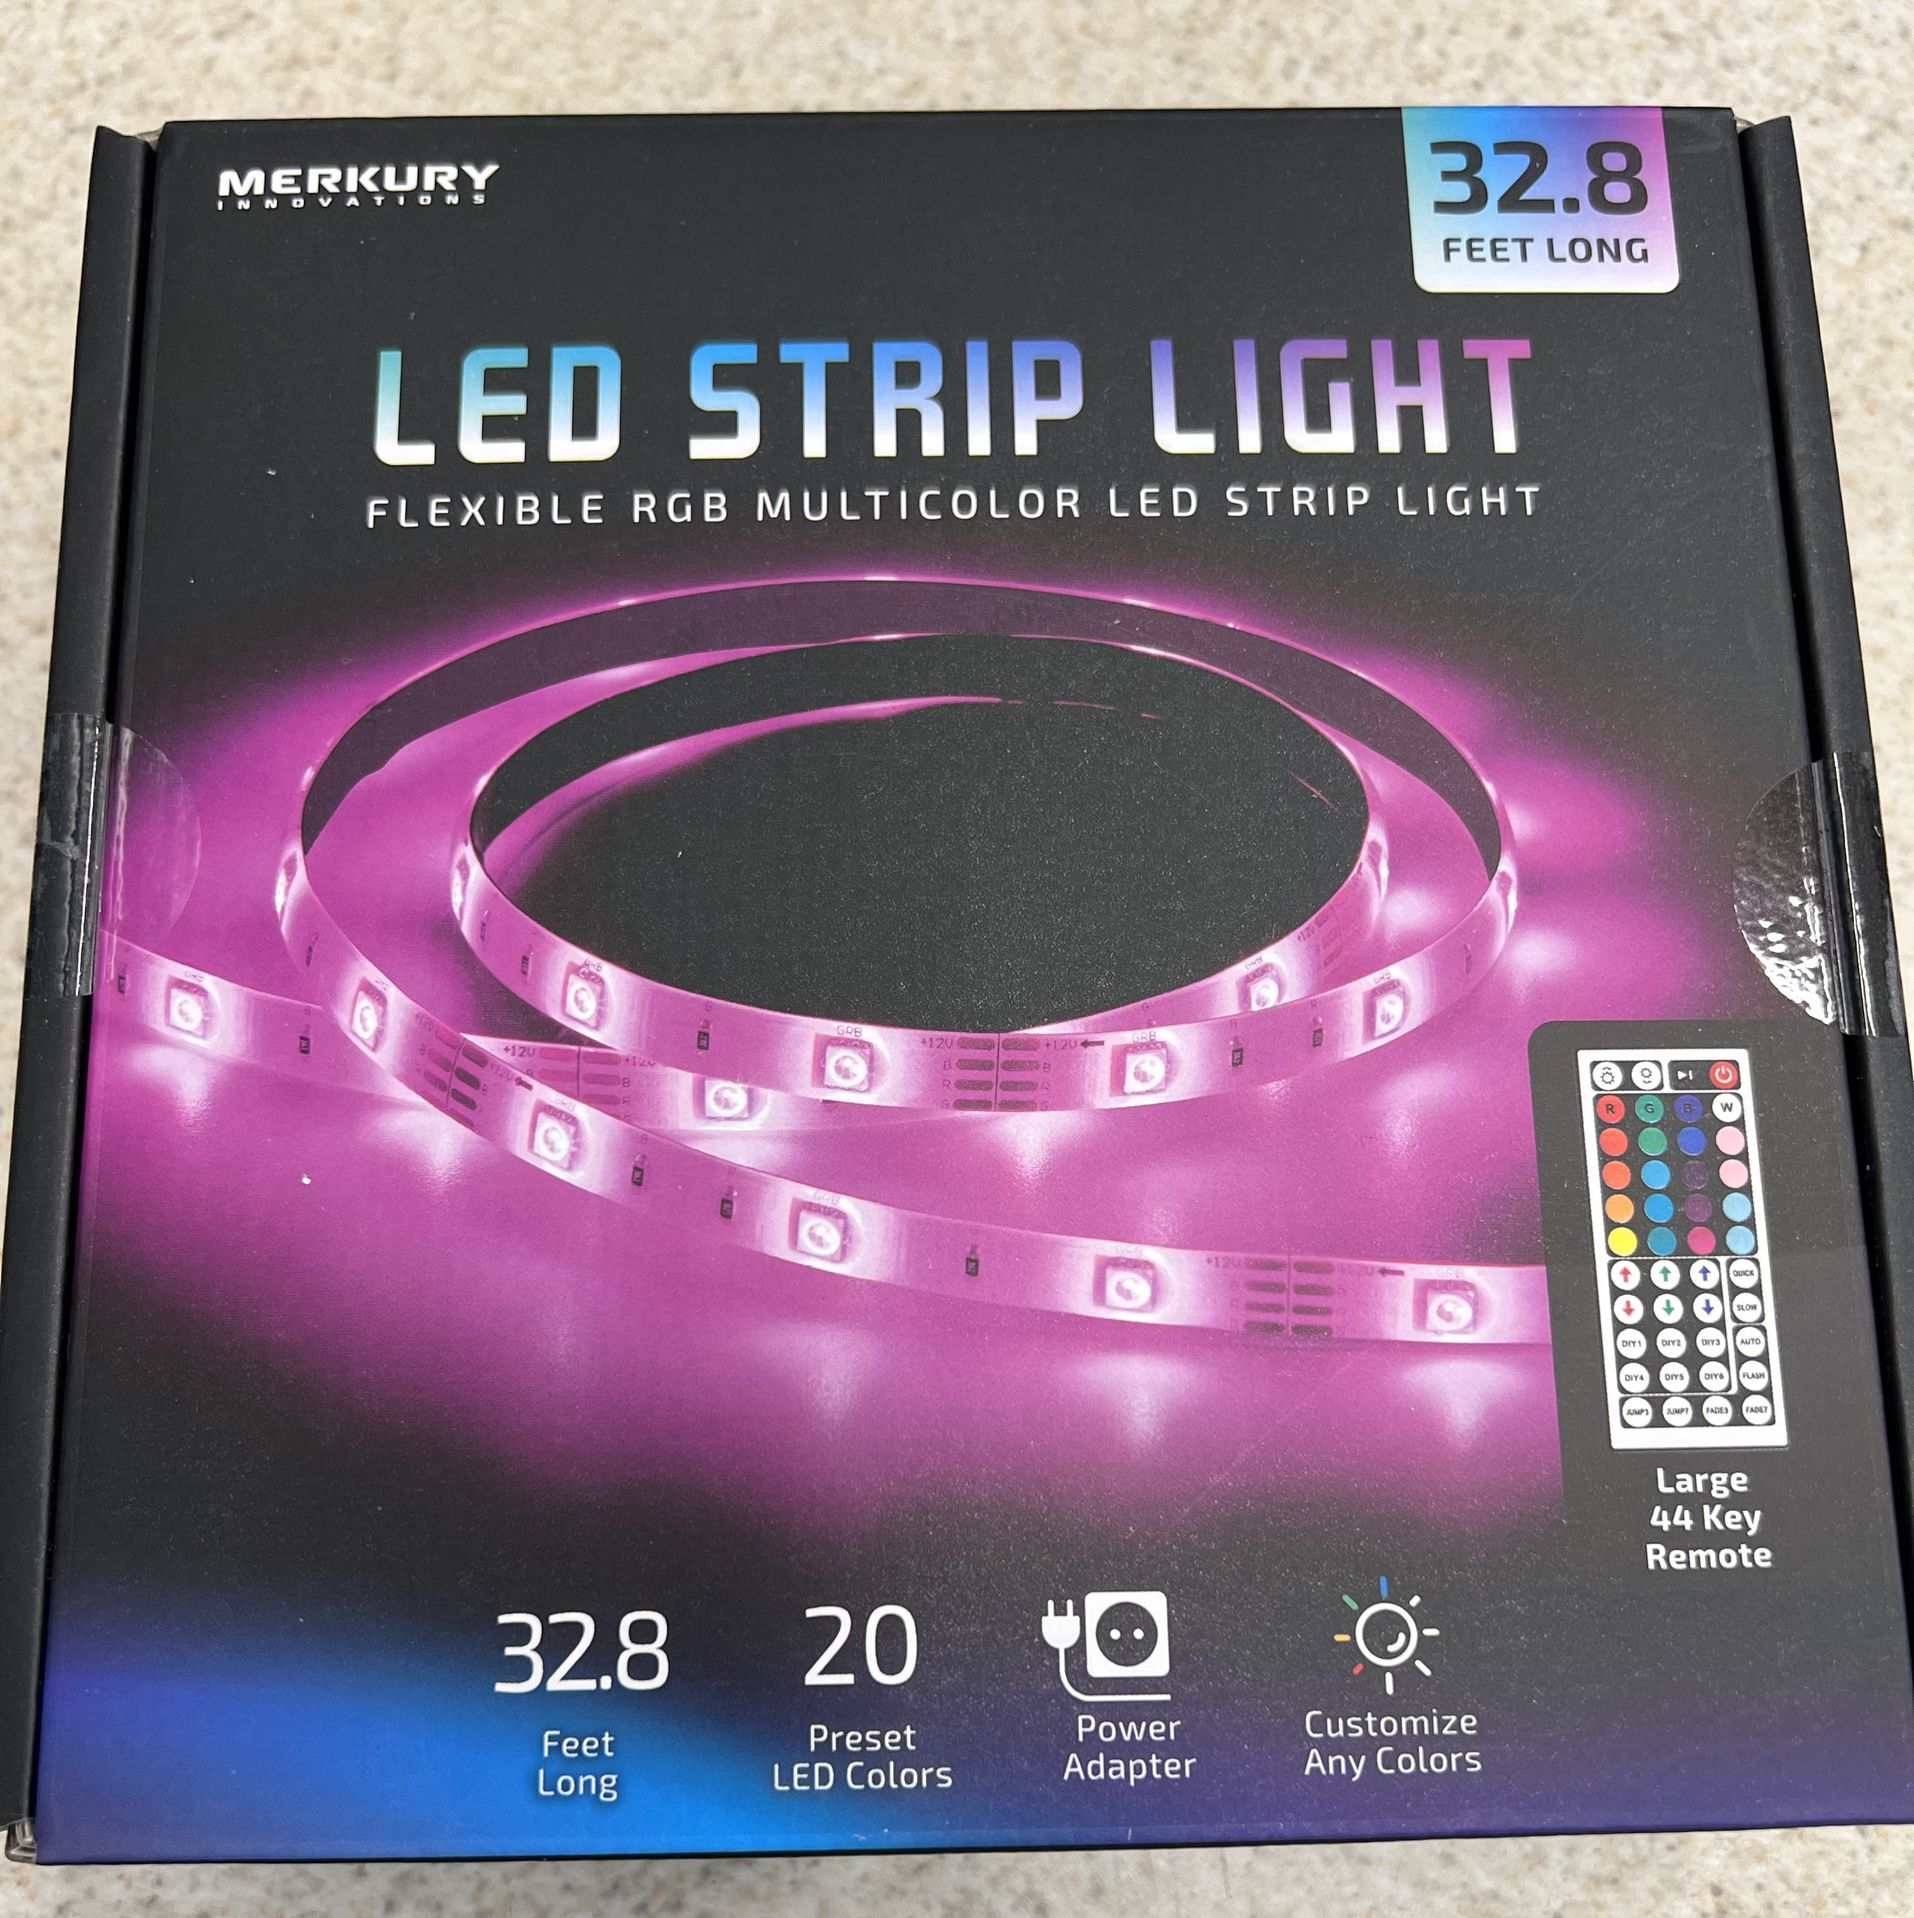 LED Strip Light 32.8 Feet Long